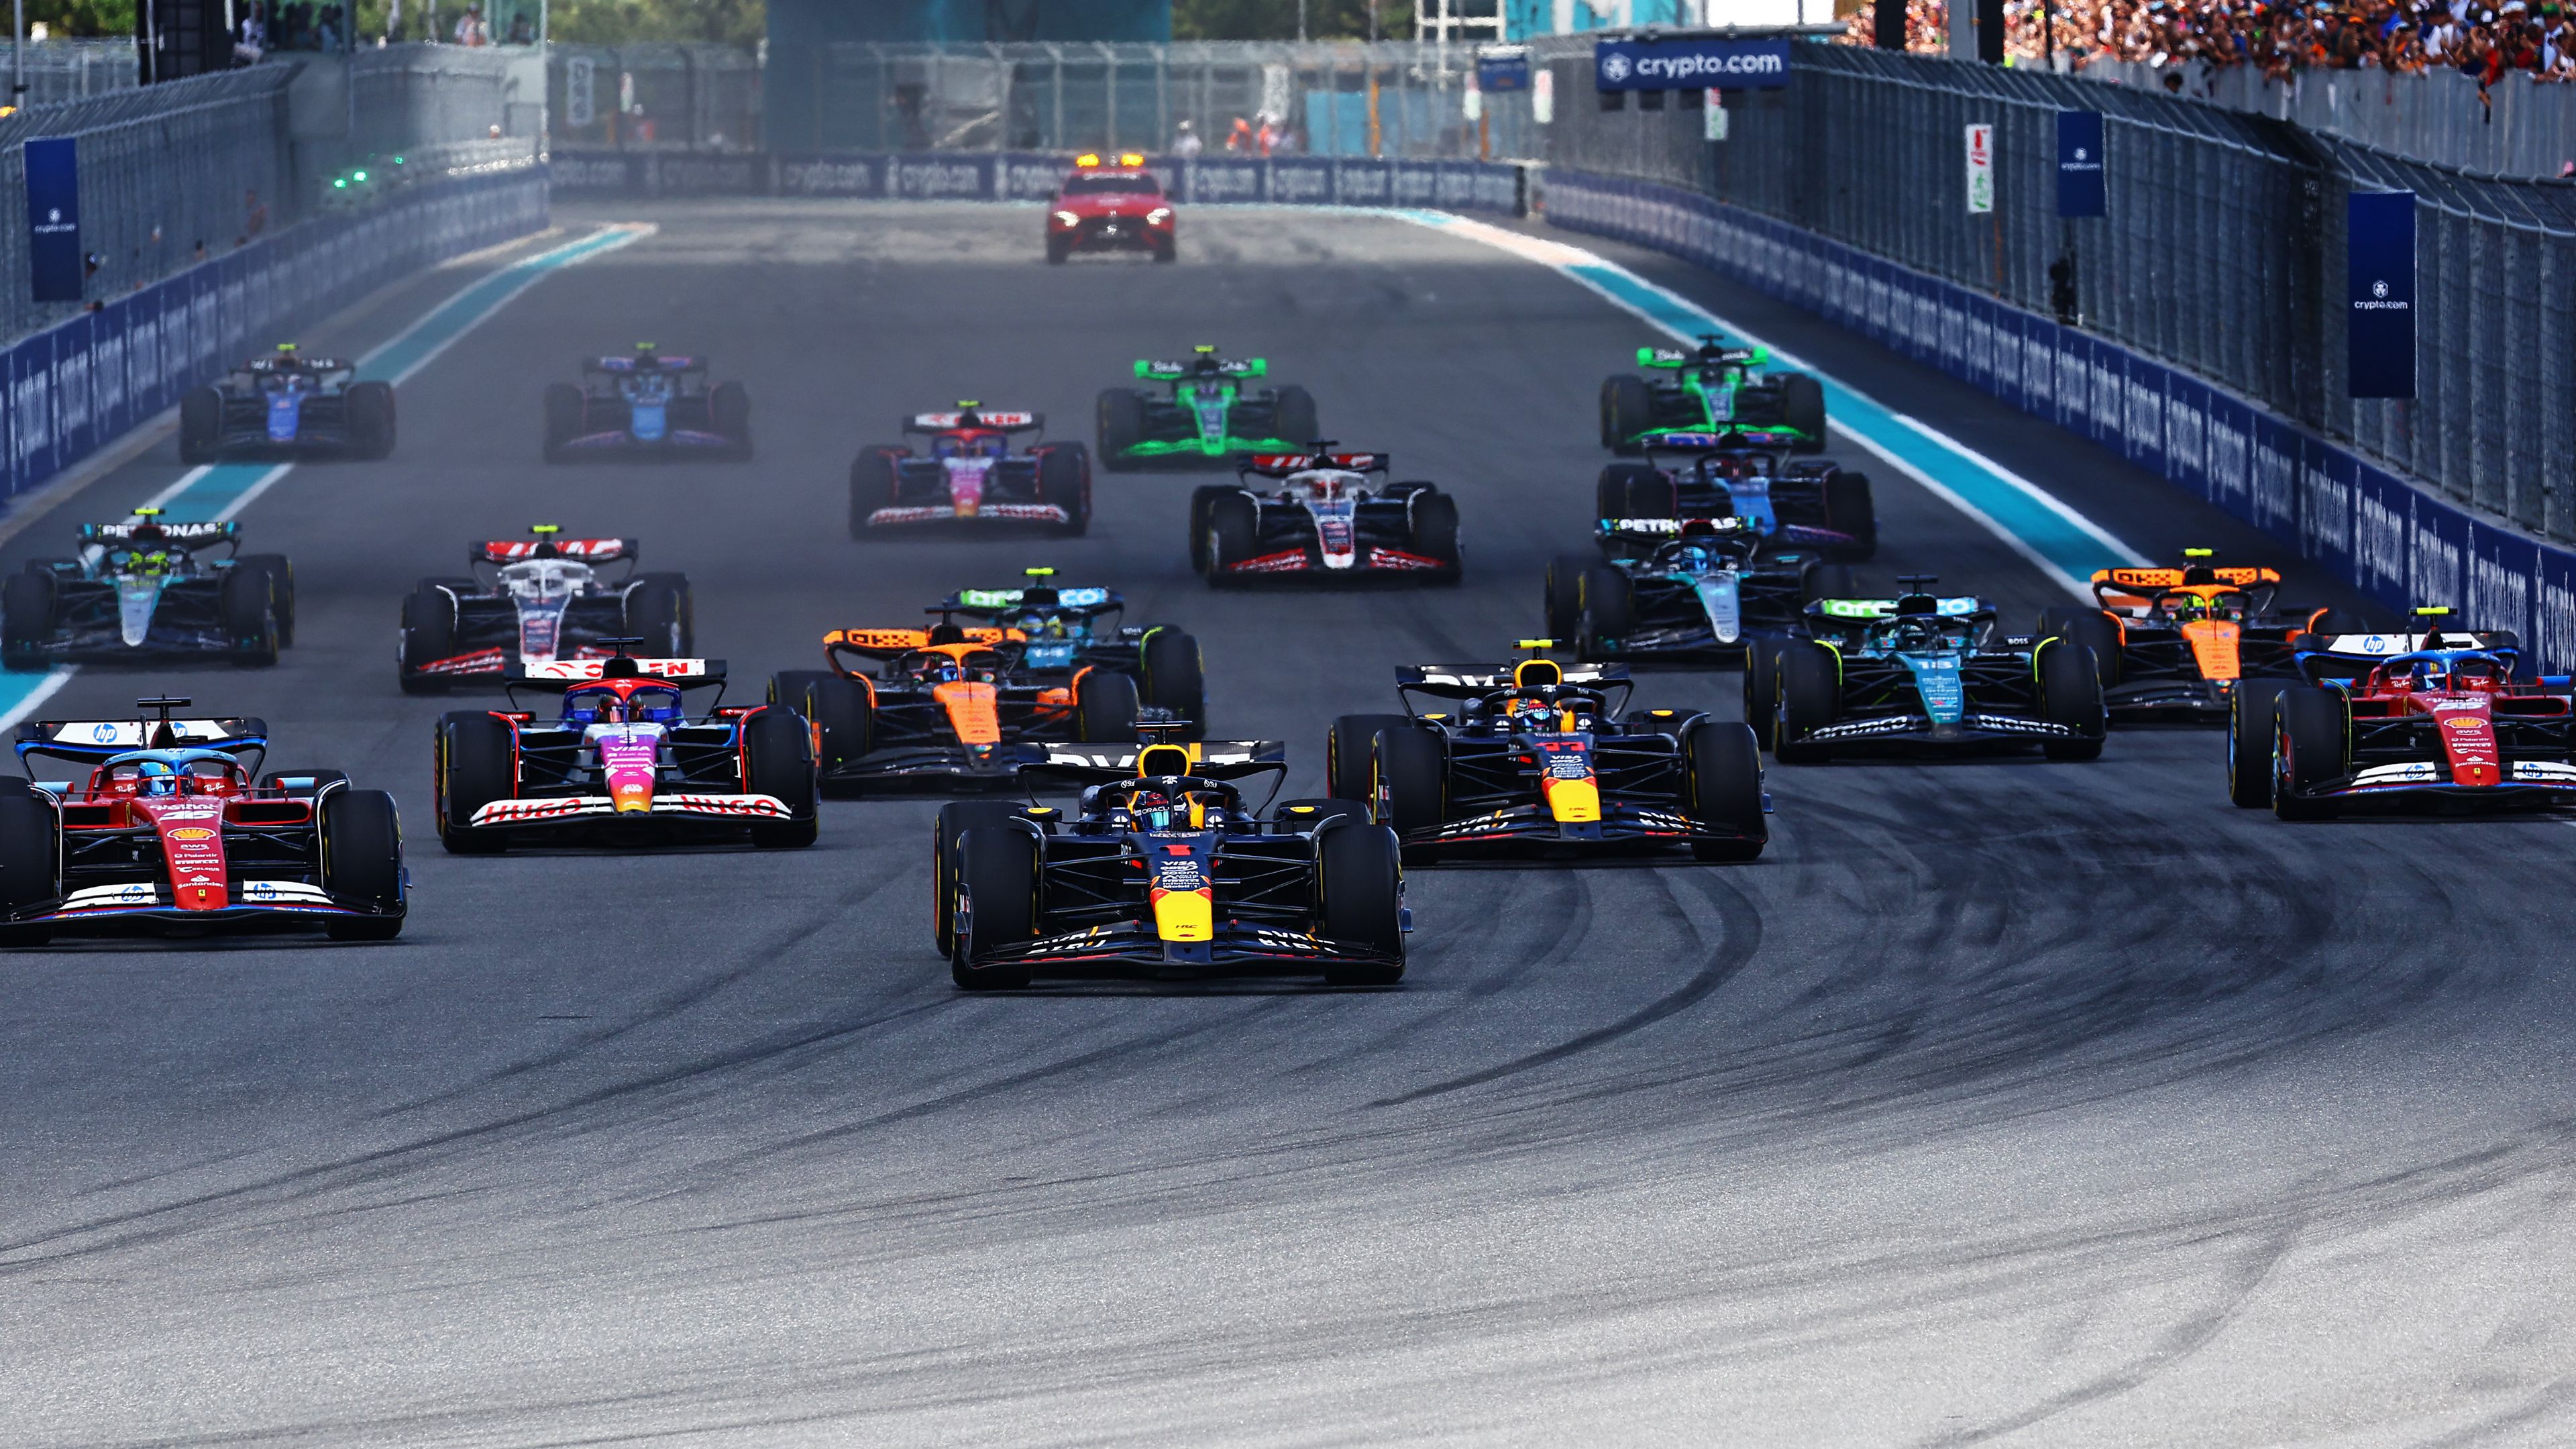 Max Verstappen sikerrel vette a hétvége első versenyét